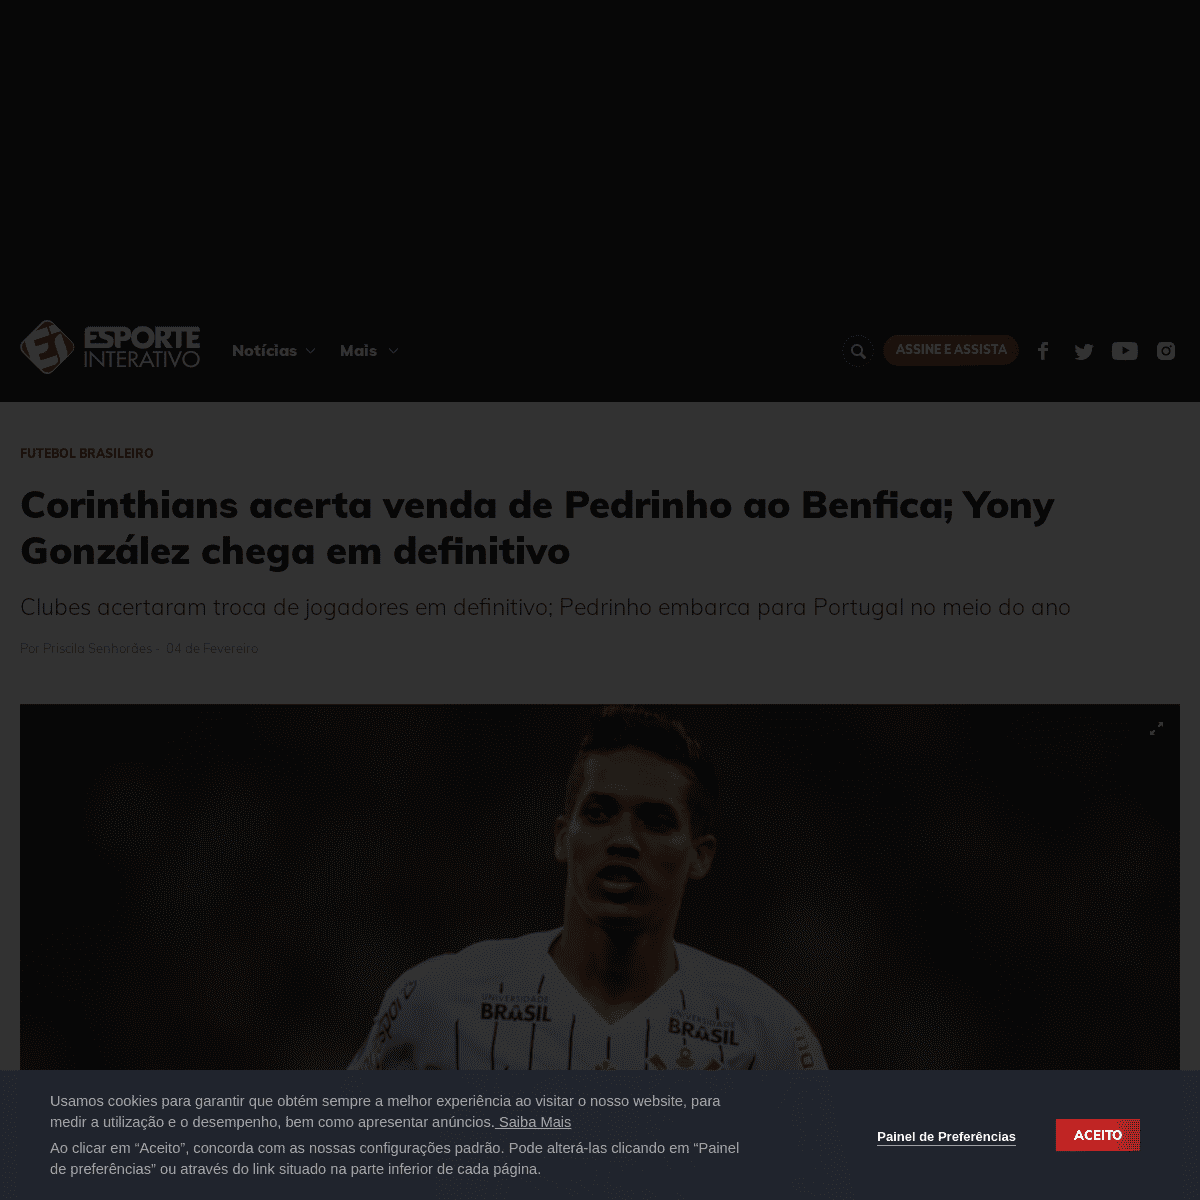 A complete backup of www.esporteinterativo.com.br/futebolbrasileiro/Corinthians-acerta-venda-de-Pedrinho-ao-Benfica-Yony-Gonzale